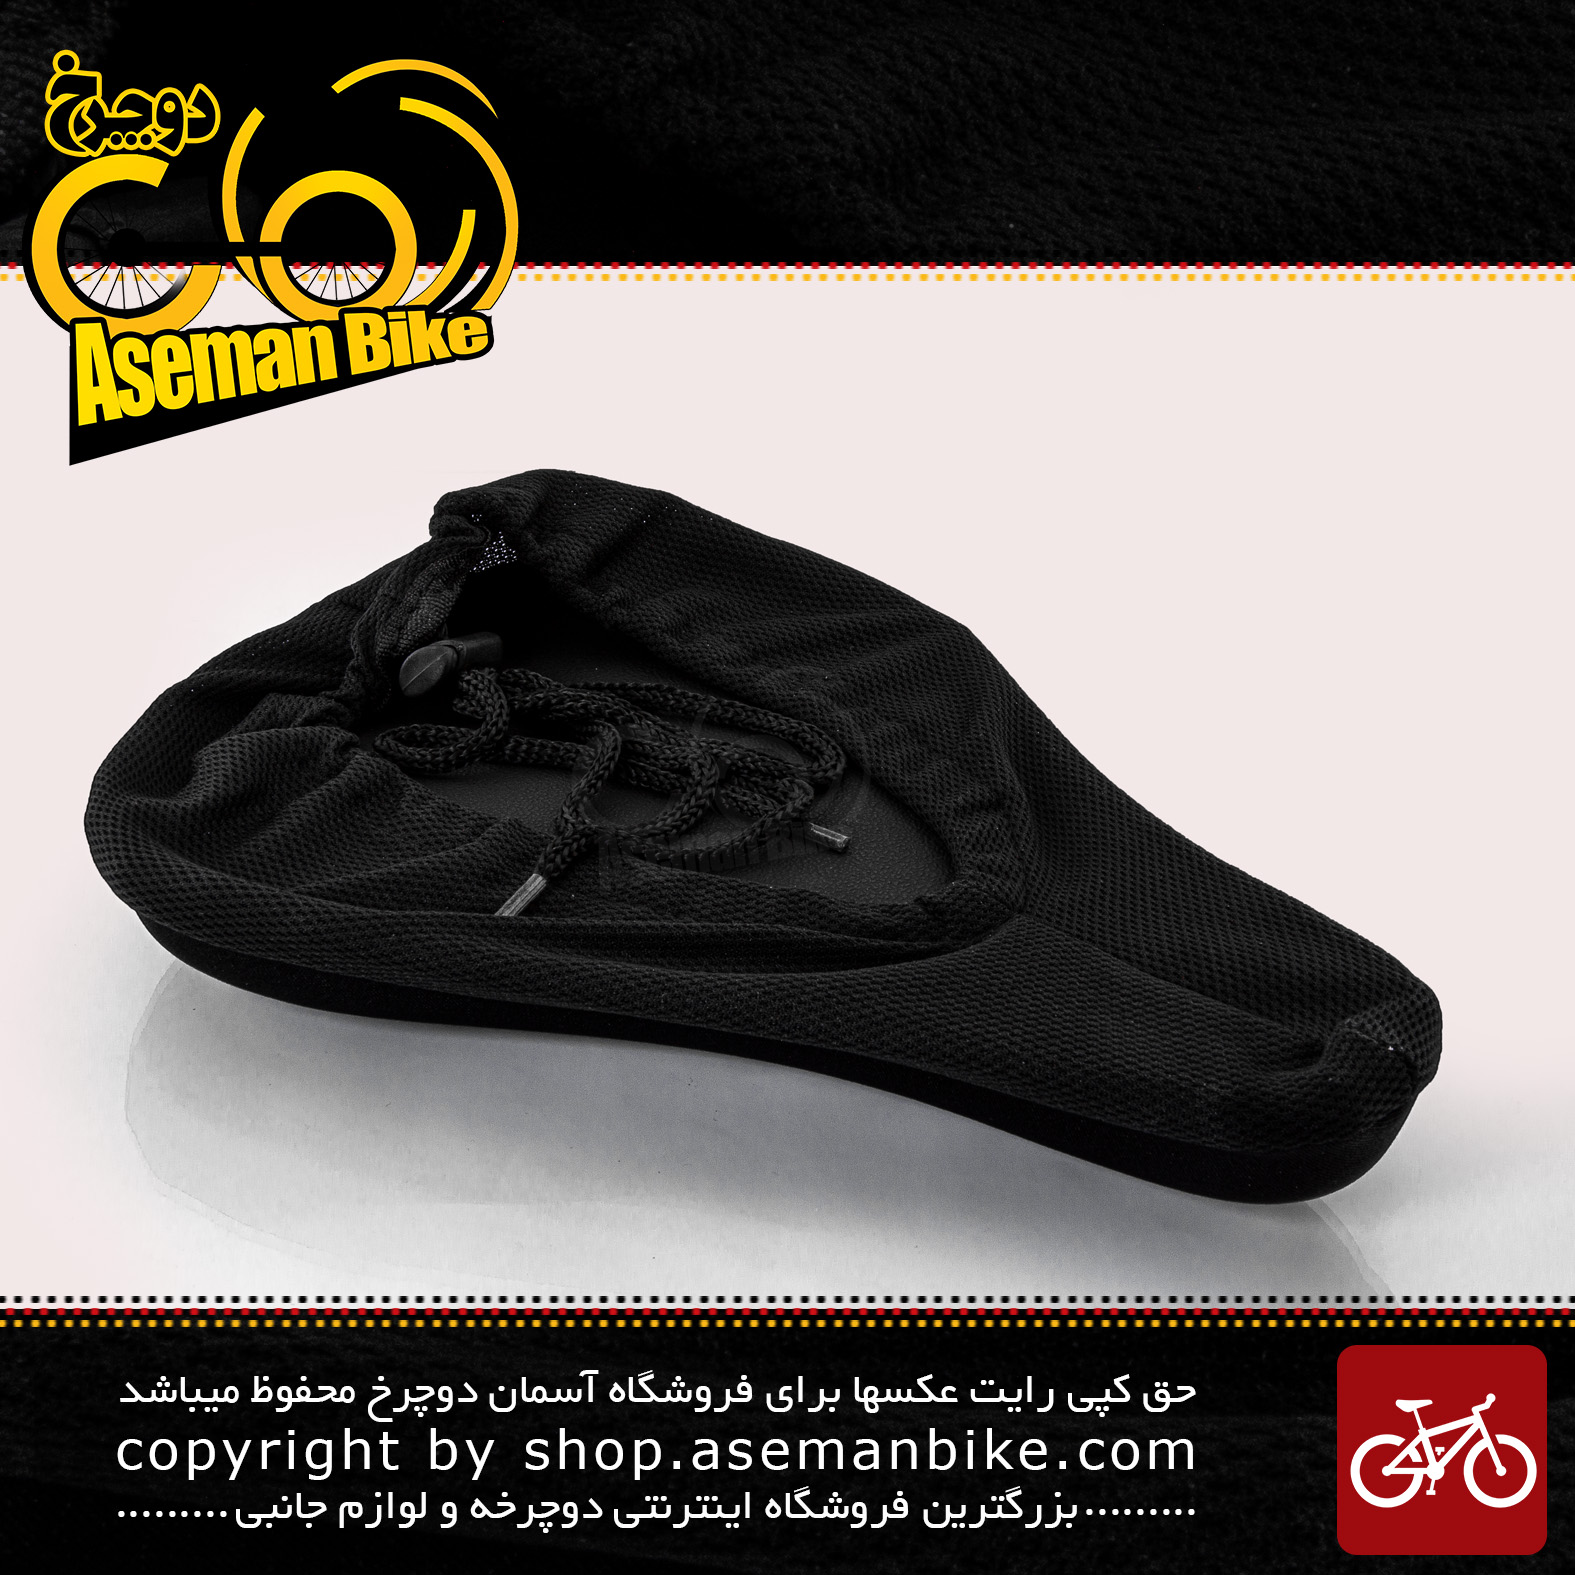 روکش زین دوچرخه اوکی مدل 10007028 ژل دار مشکی مناسب برای دوچرخه سایز 26 OK Bicycle Saddle cover 10007028 Black